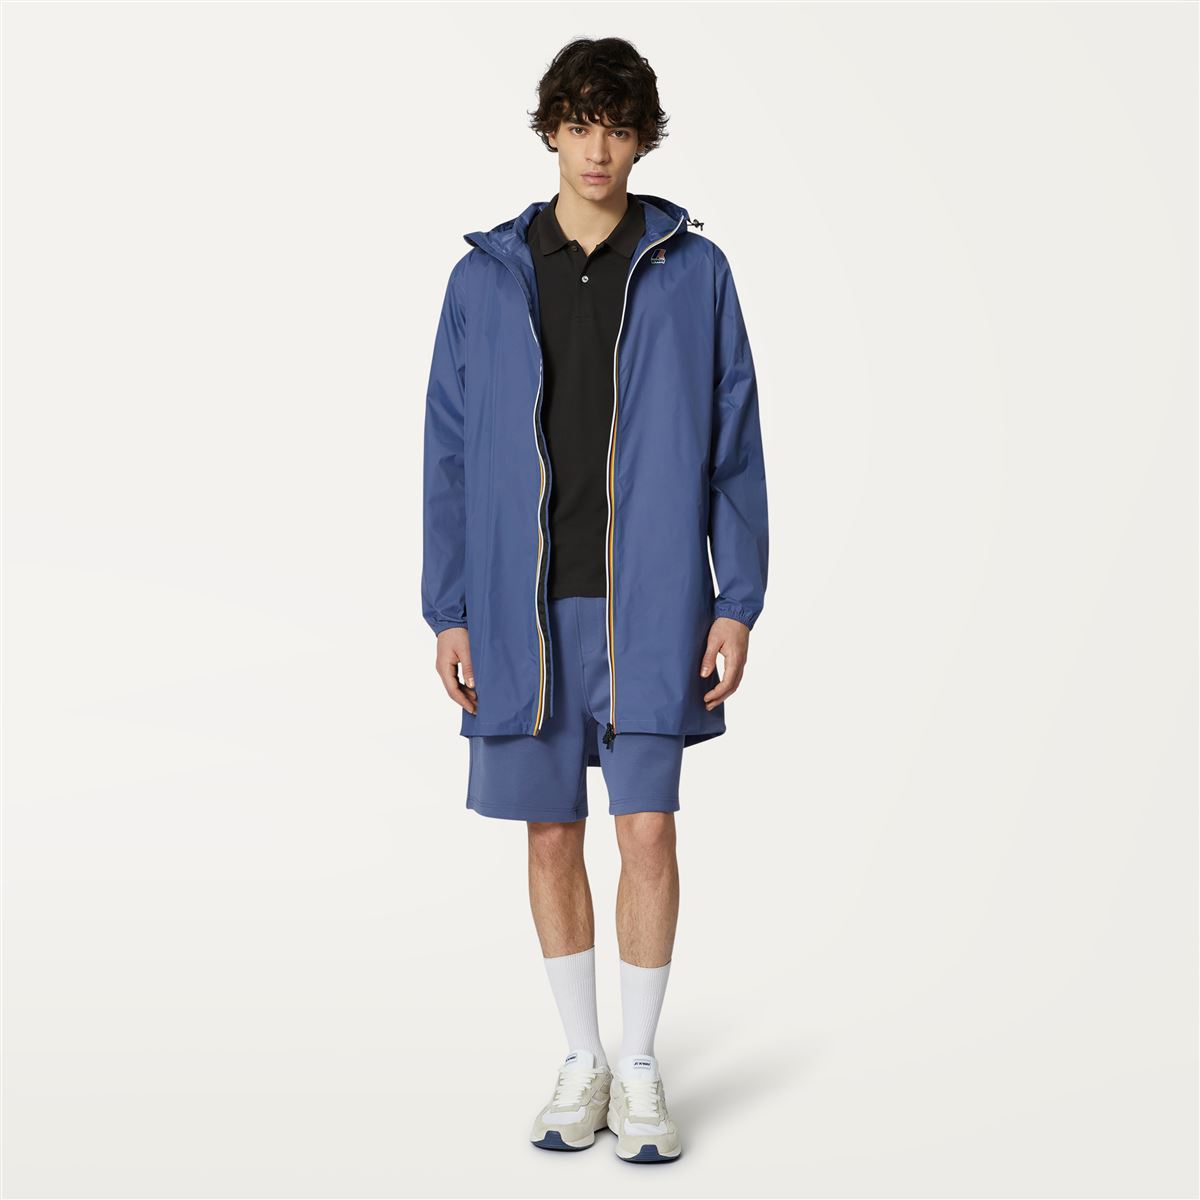 Eiffel - Unisex Waterproof Packable Long Rain Jacket in Blue Indigo